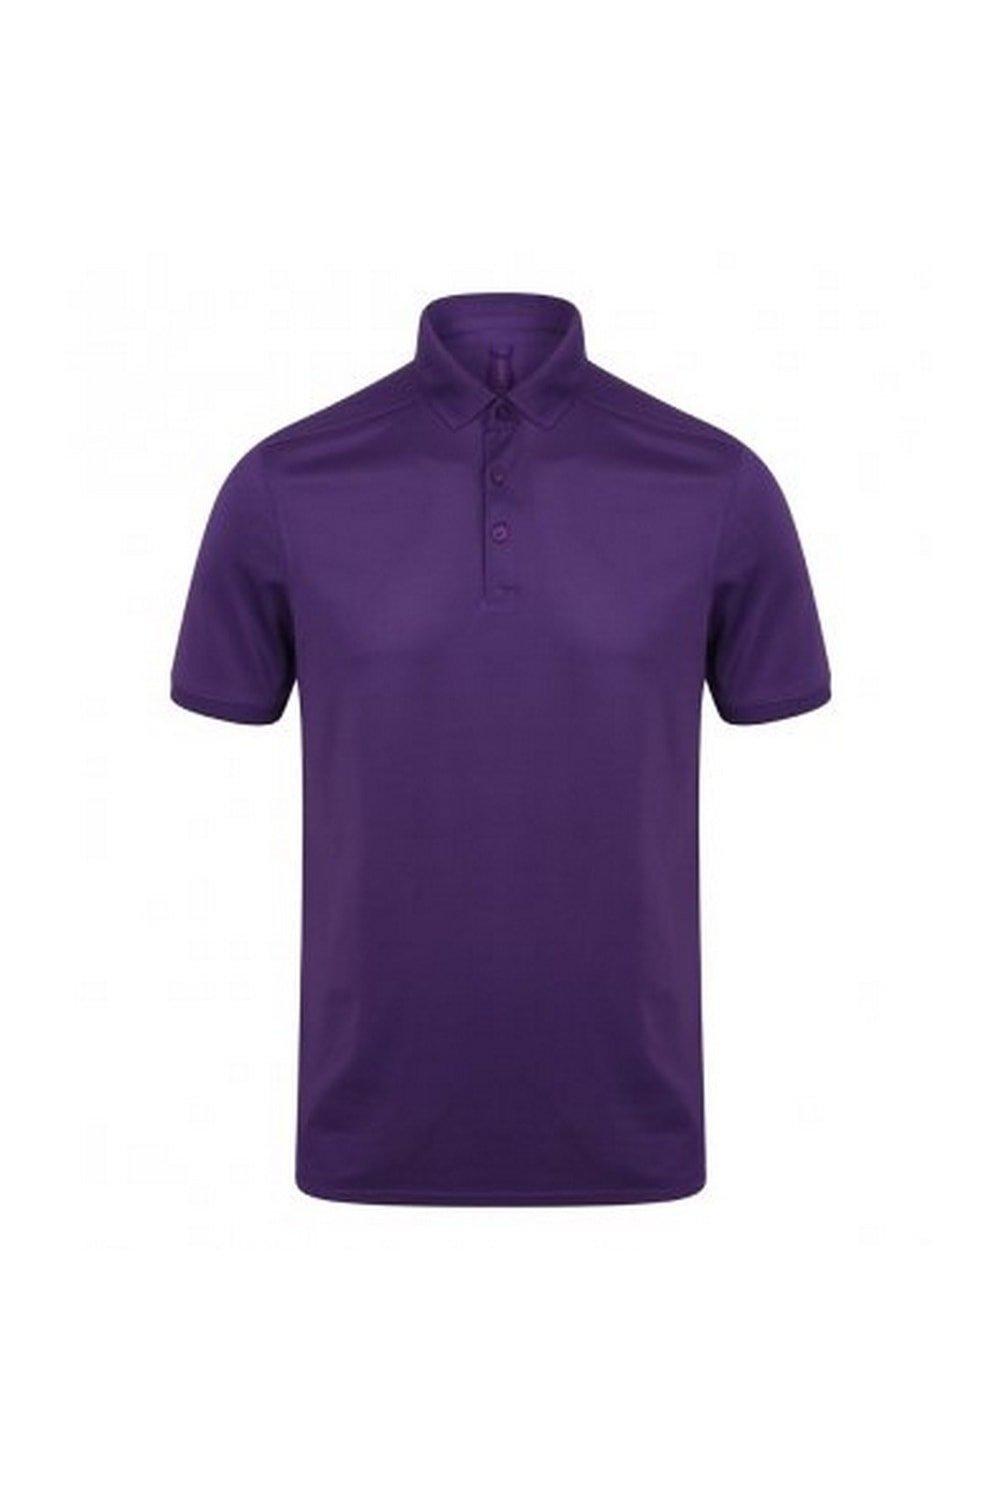 цена Рубашка поло из пике стрейч из микрофайна Henbury, фиолетовый